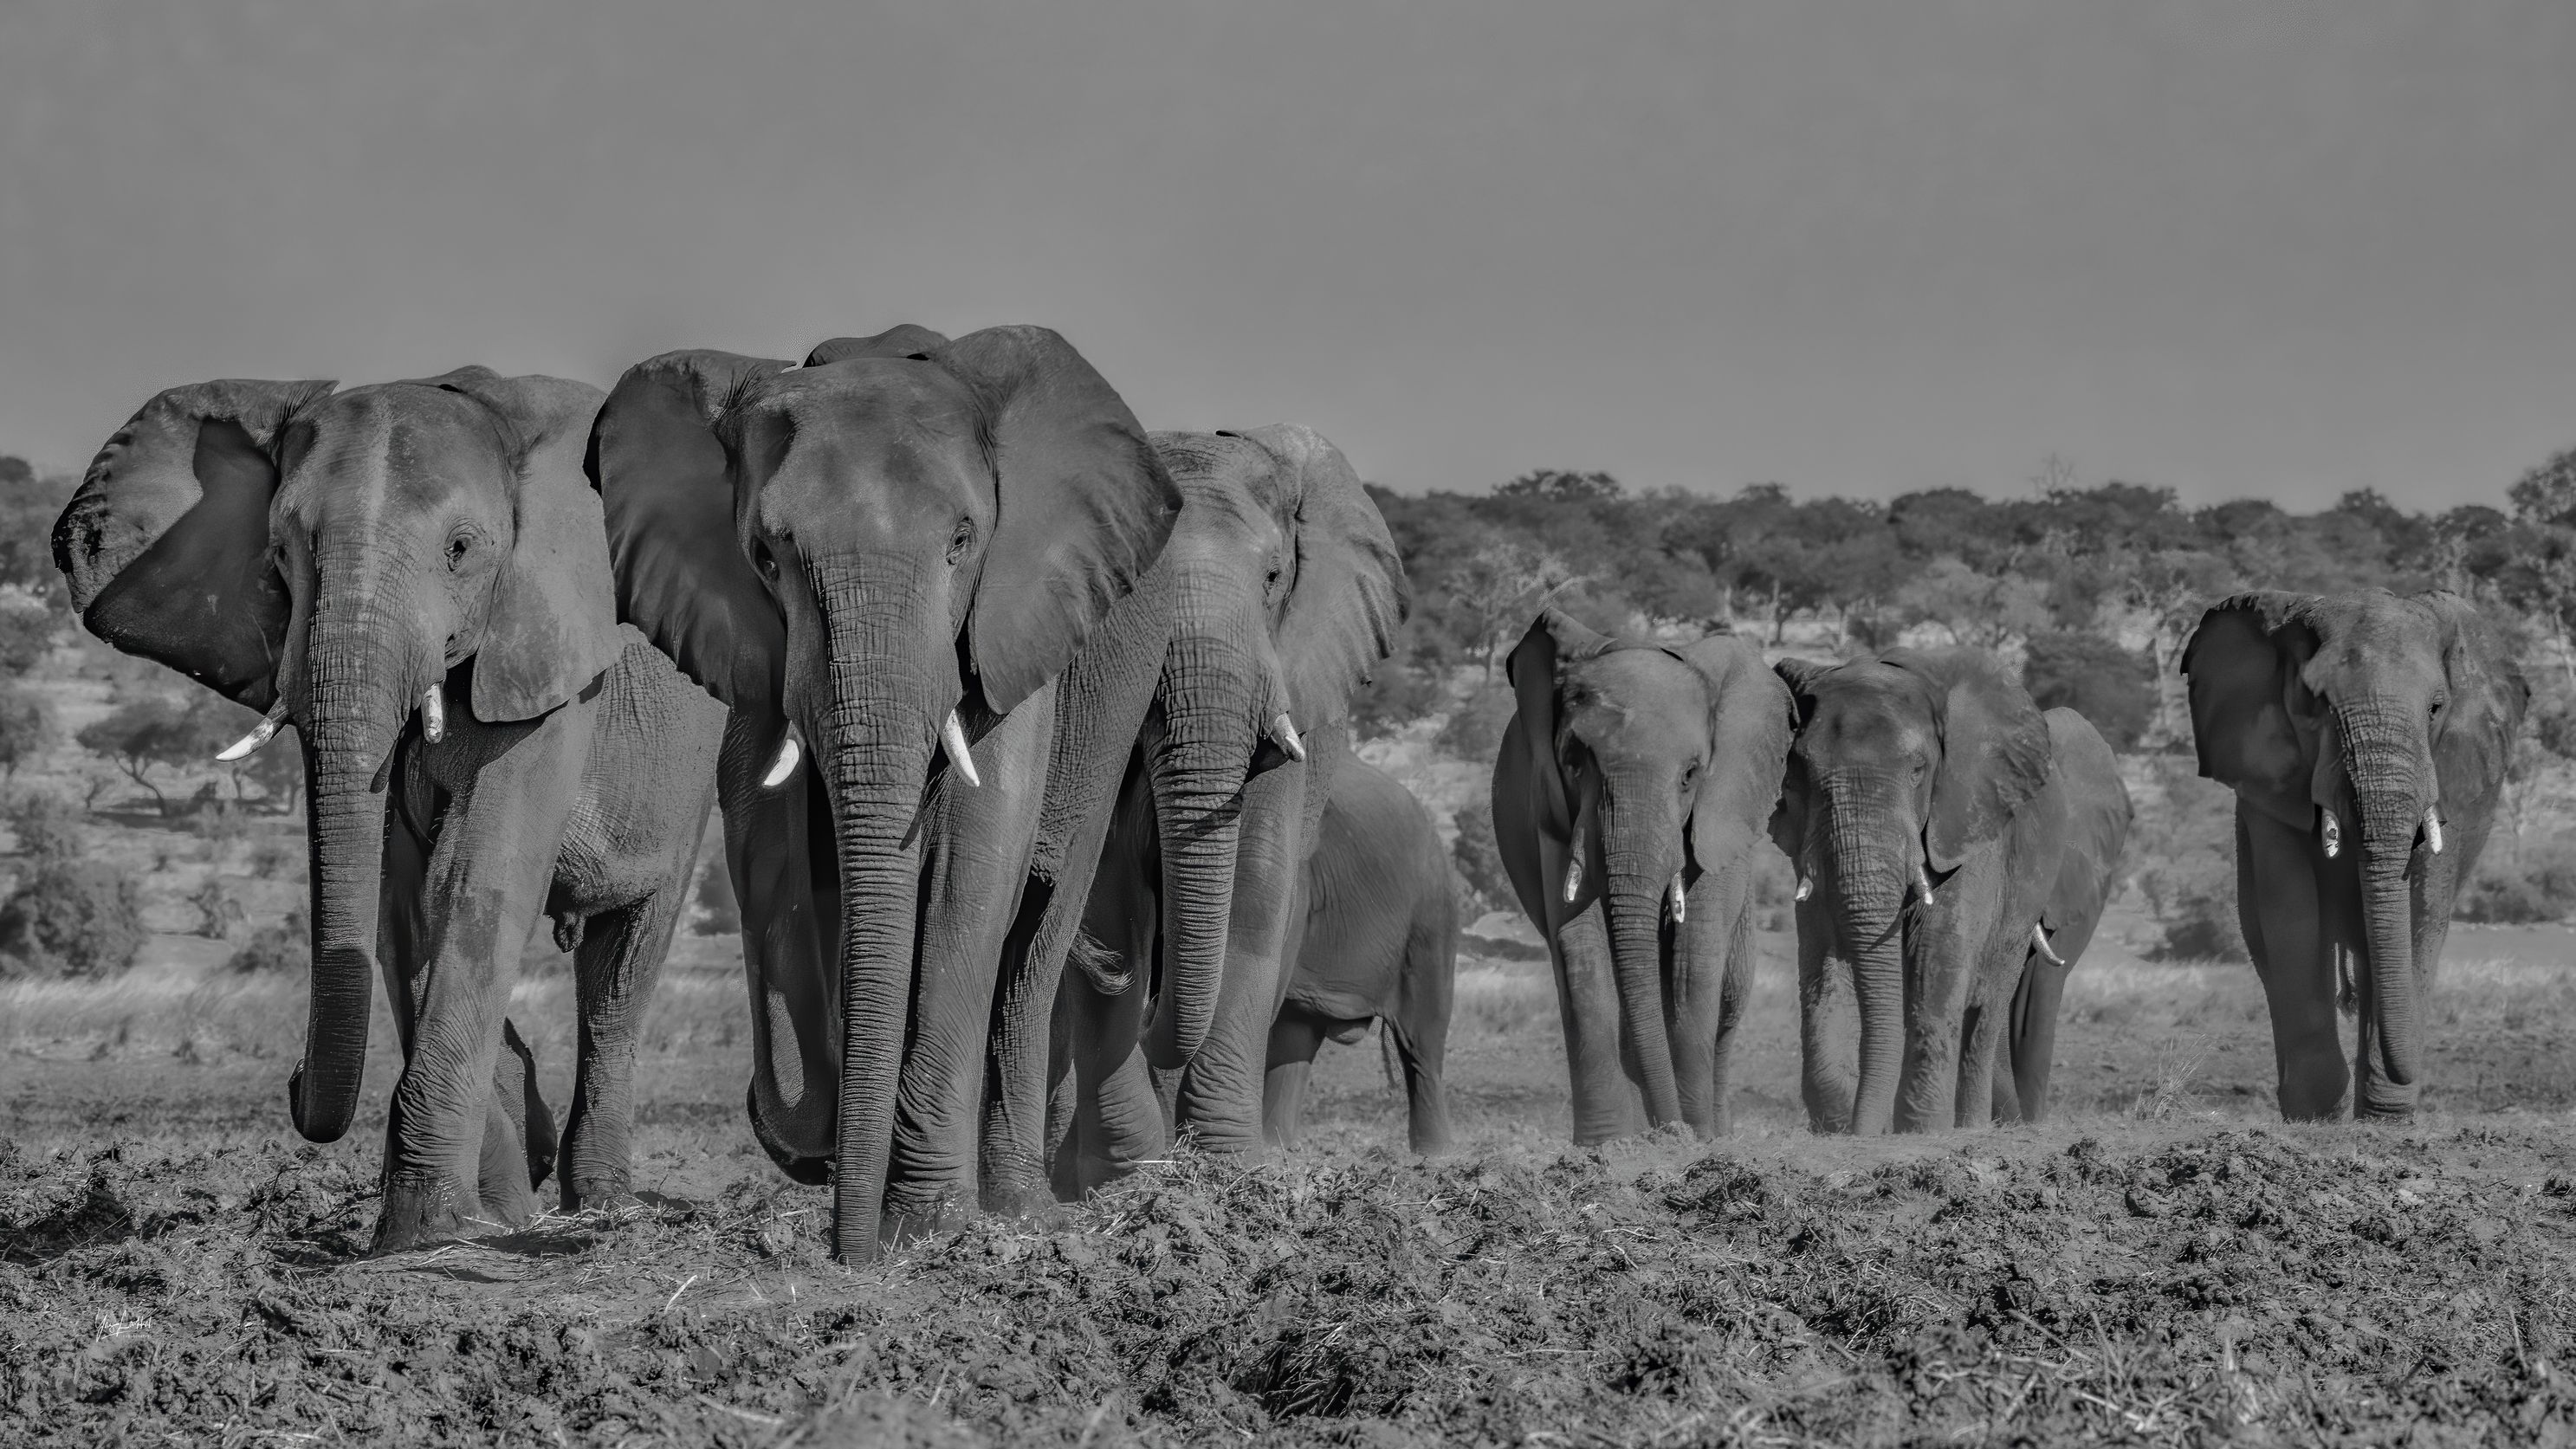 DSC_2697-4-Elephants.jpg